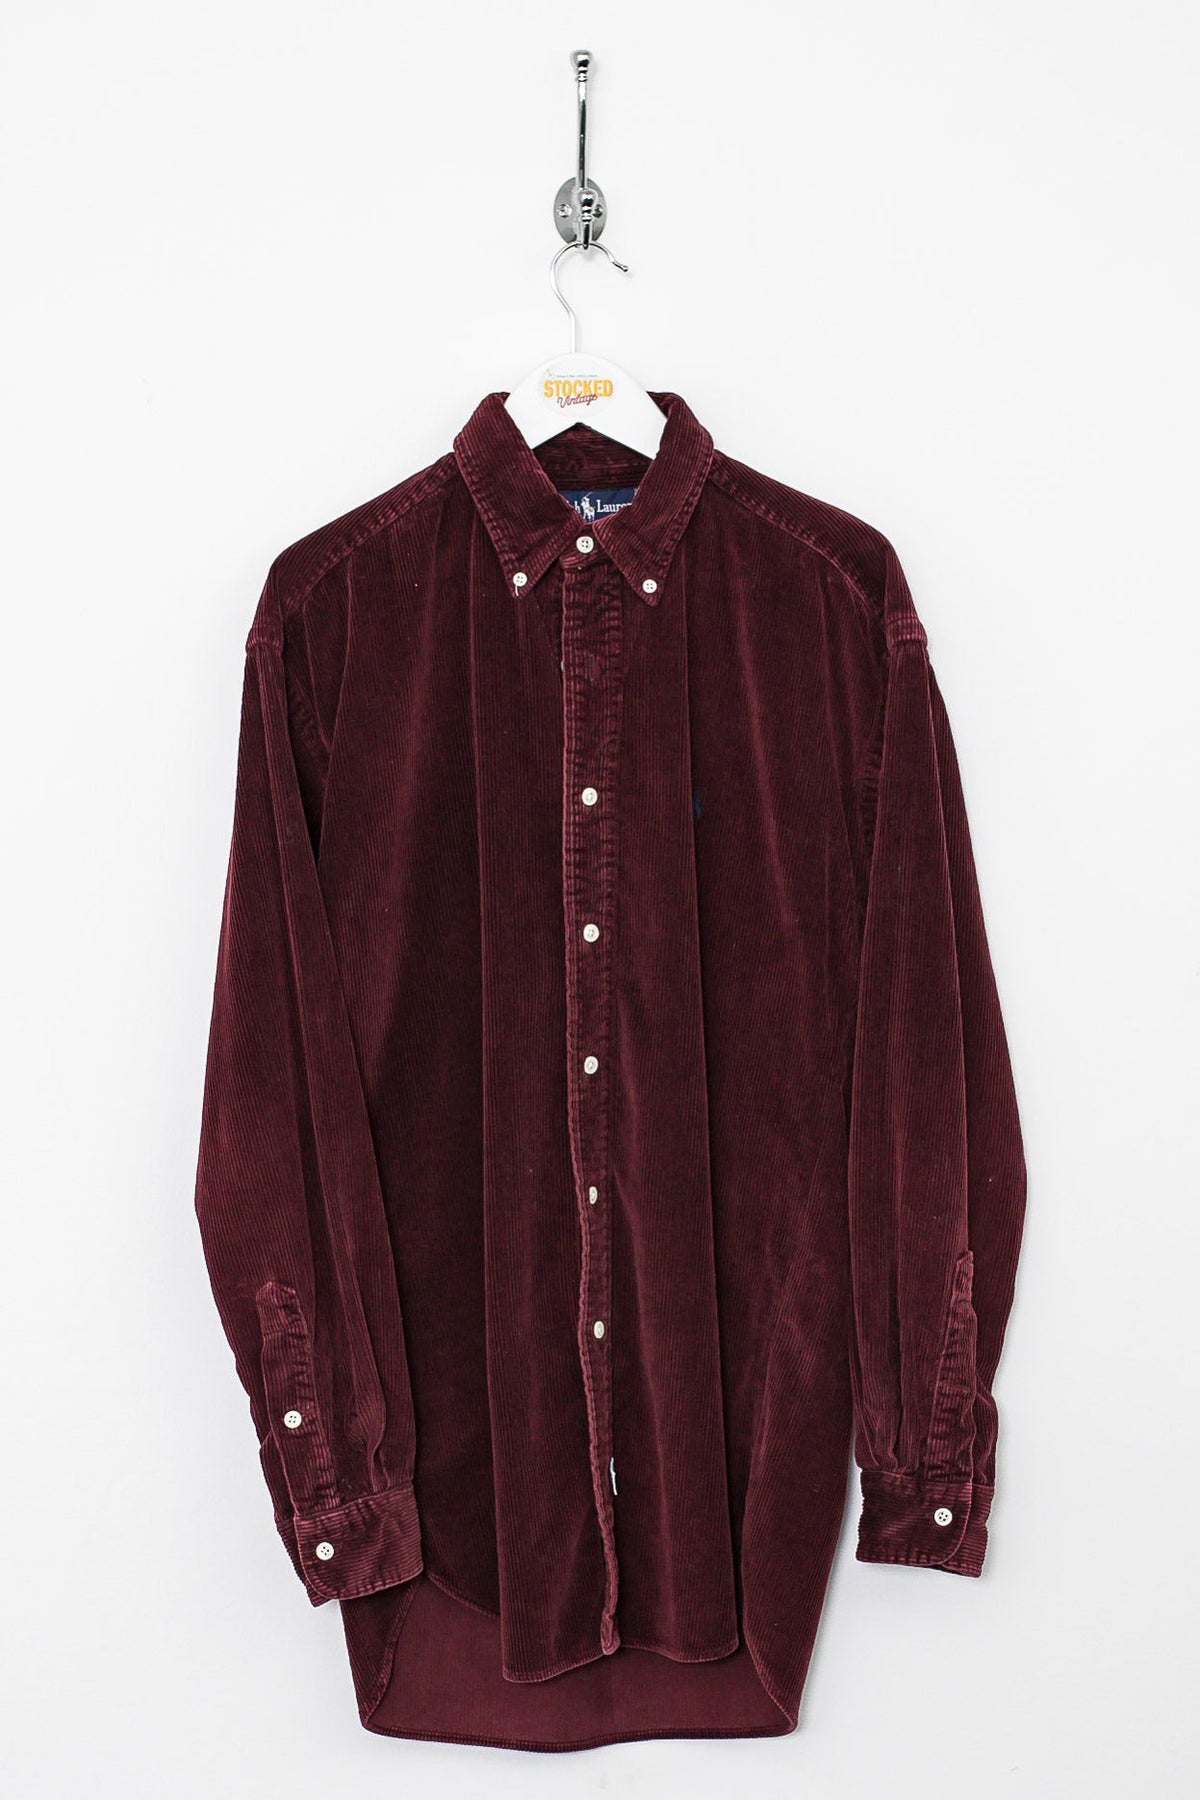 90s Ralph Lauren Corduroy Shirt (S)